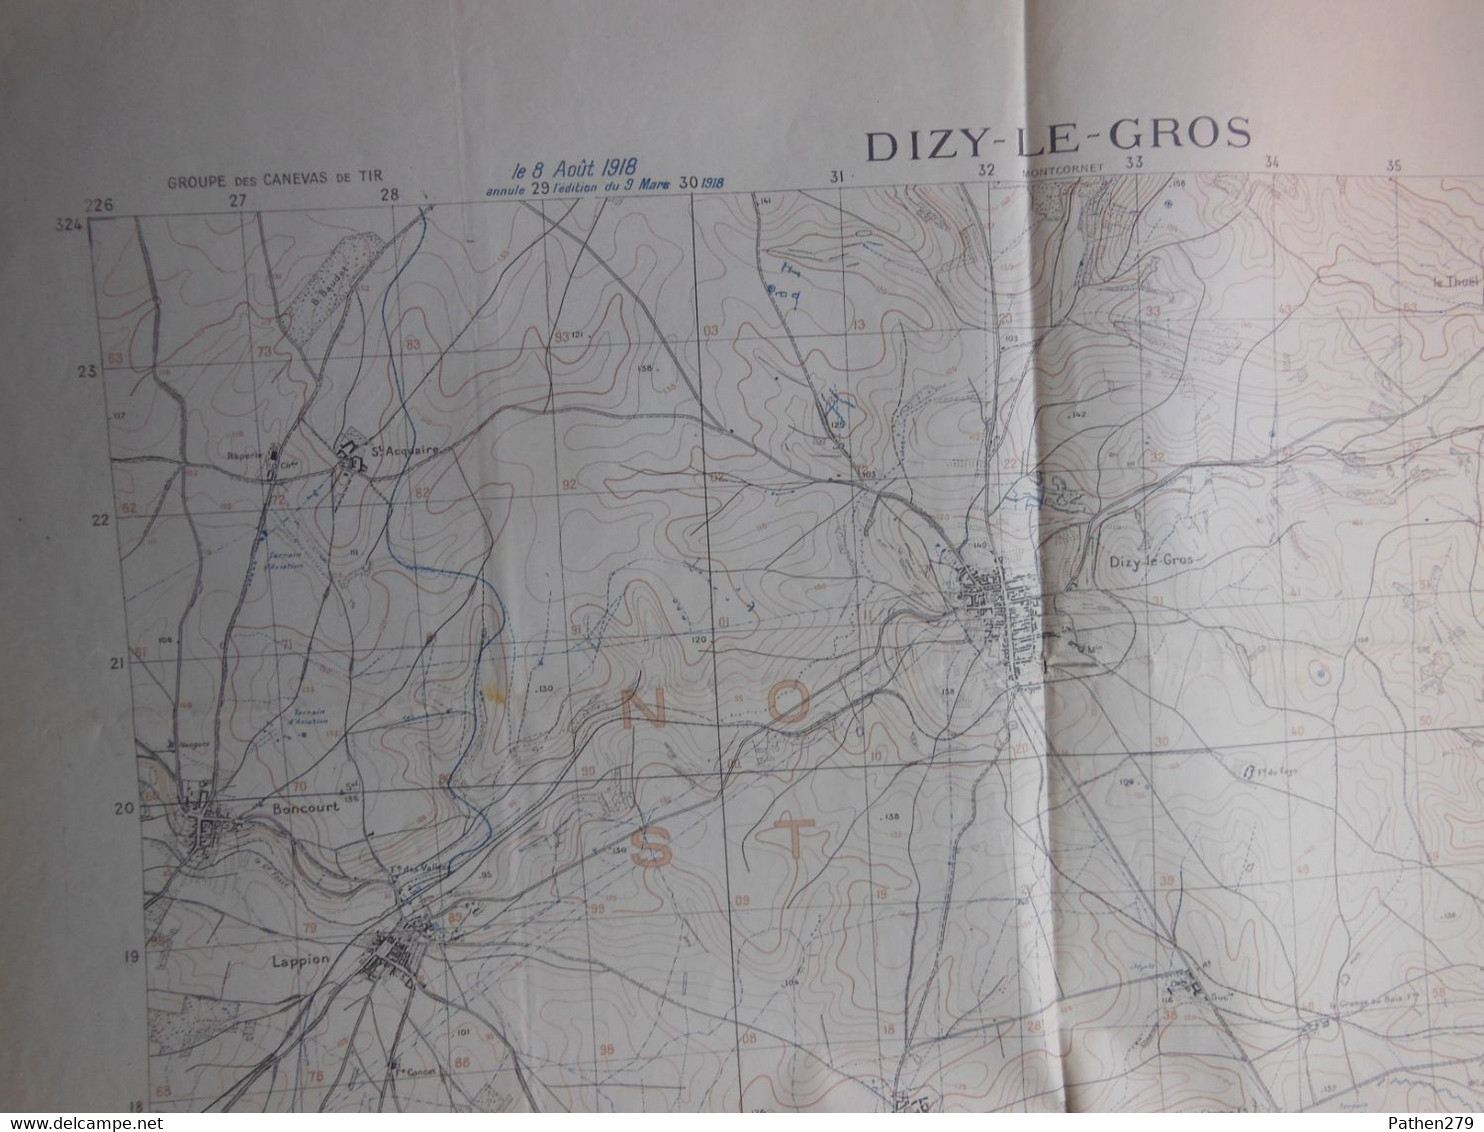 Grande Carte D'Etat-Major DIZY-LE-GROS (02 - Aisne) Publiée En 1918 - 1ère Guerre Mondiale - Carte Geographique